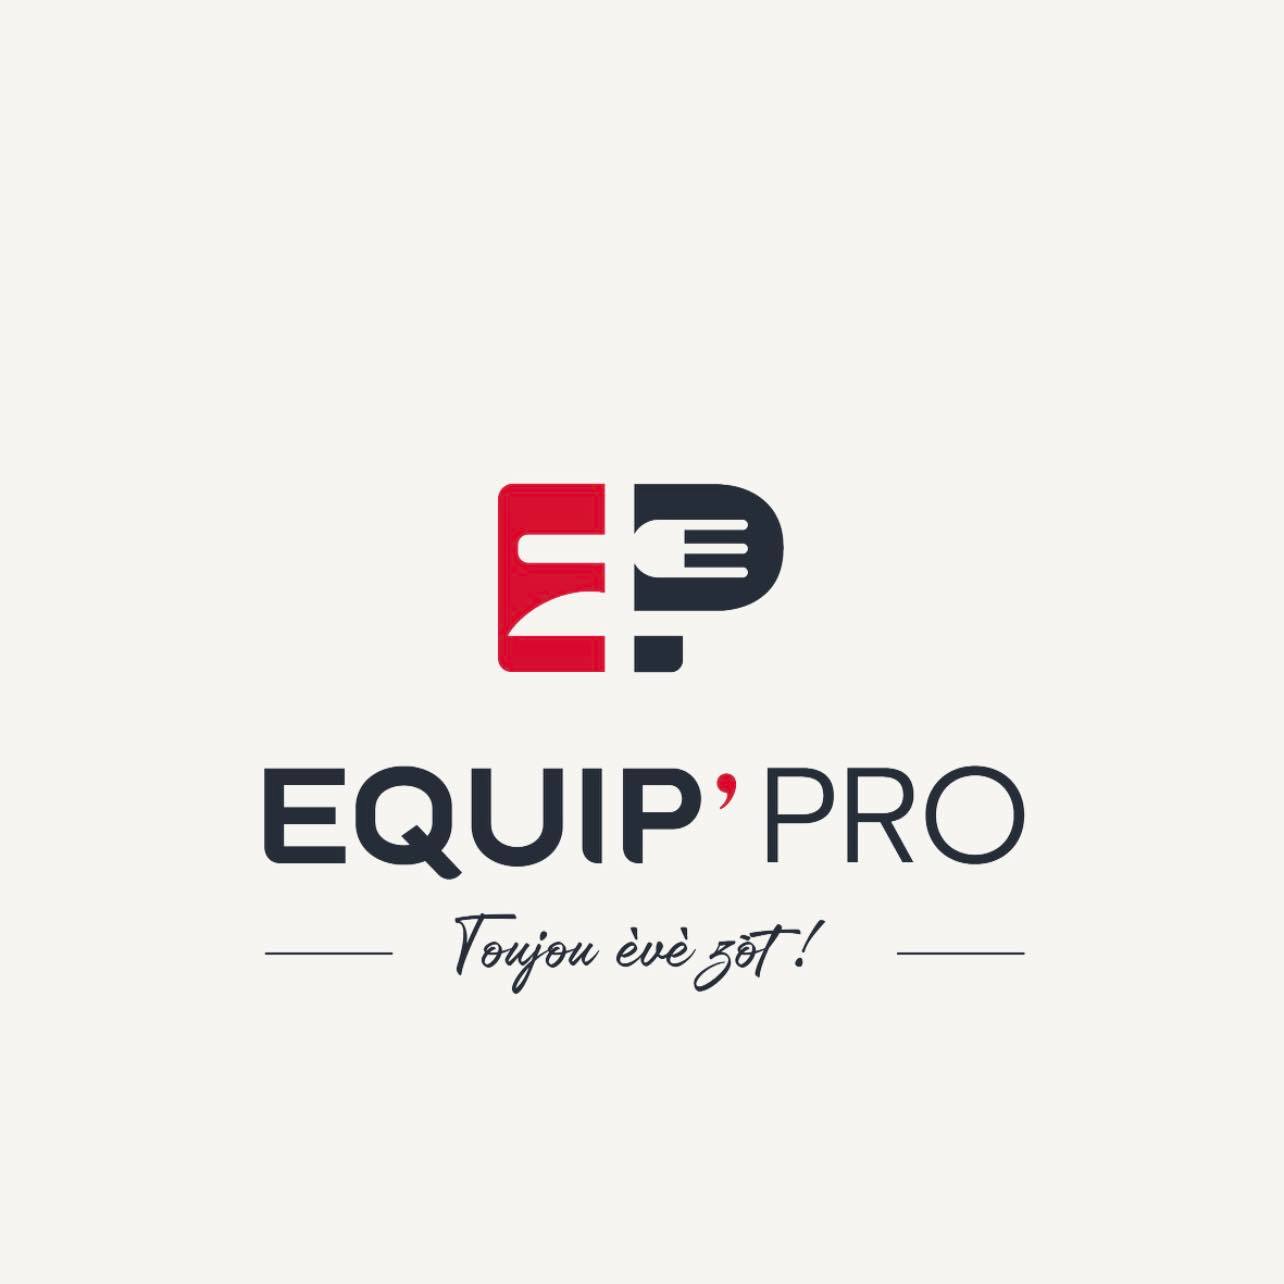 Equip Pro